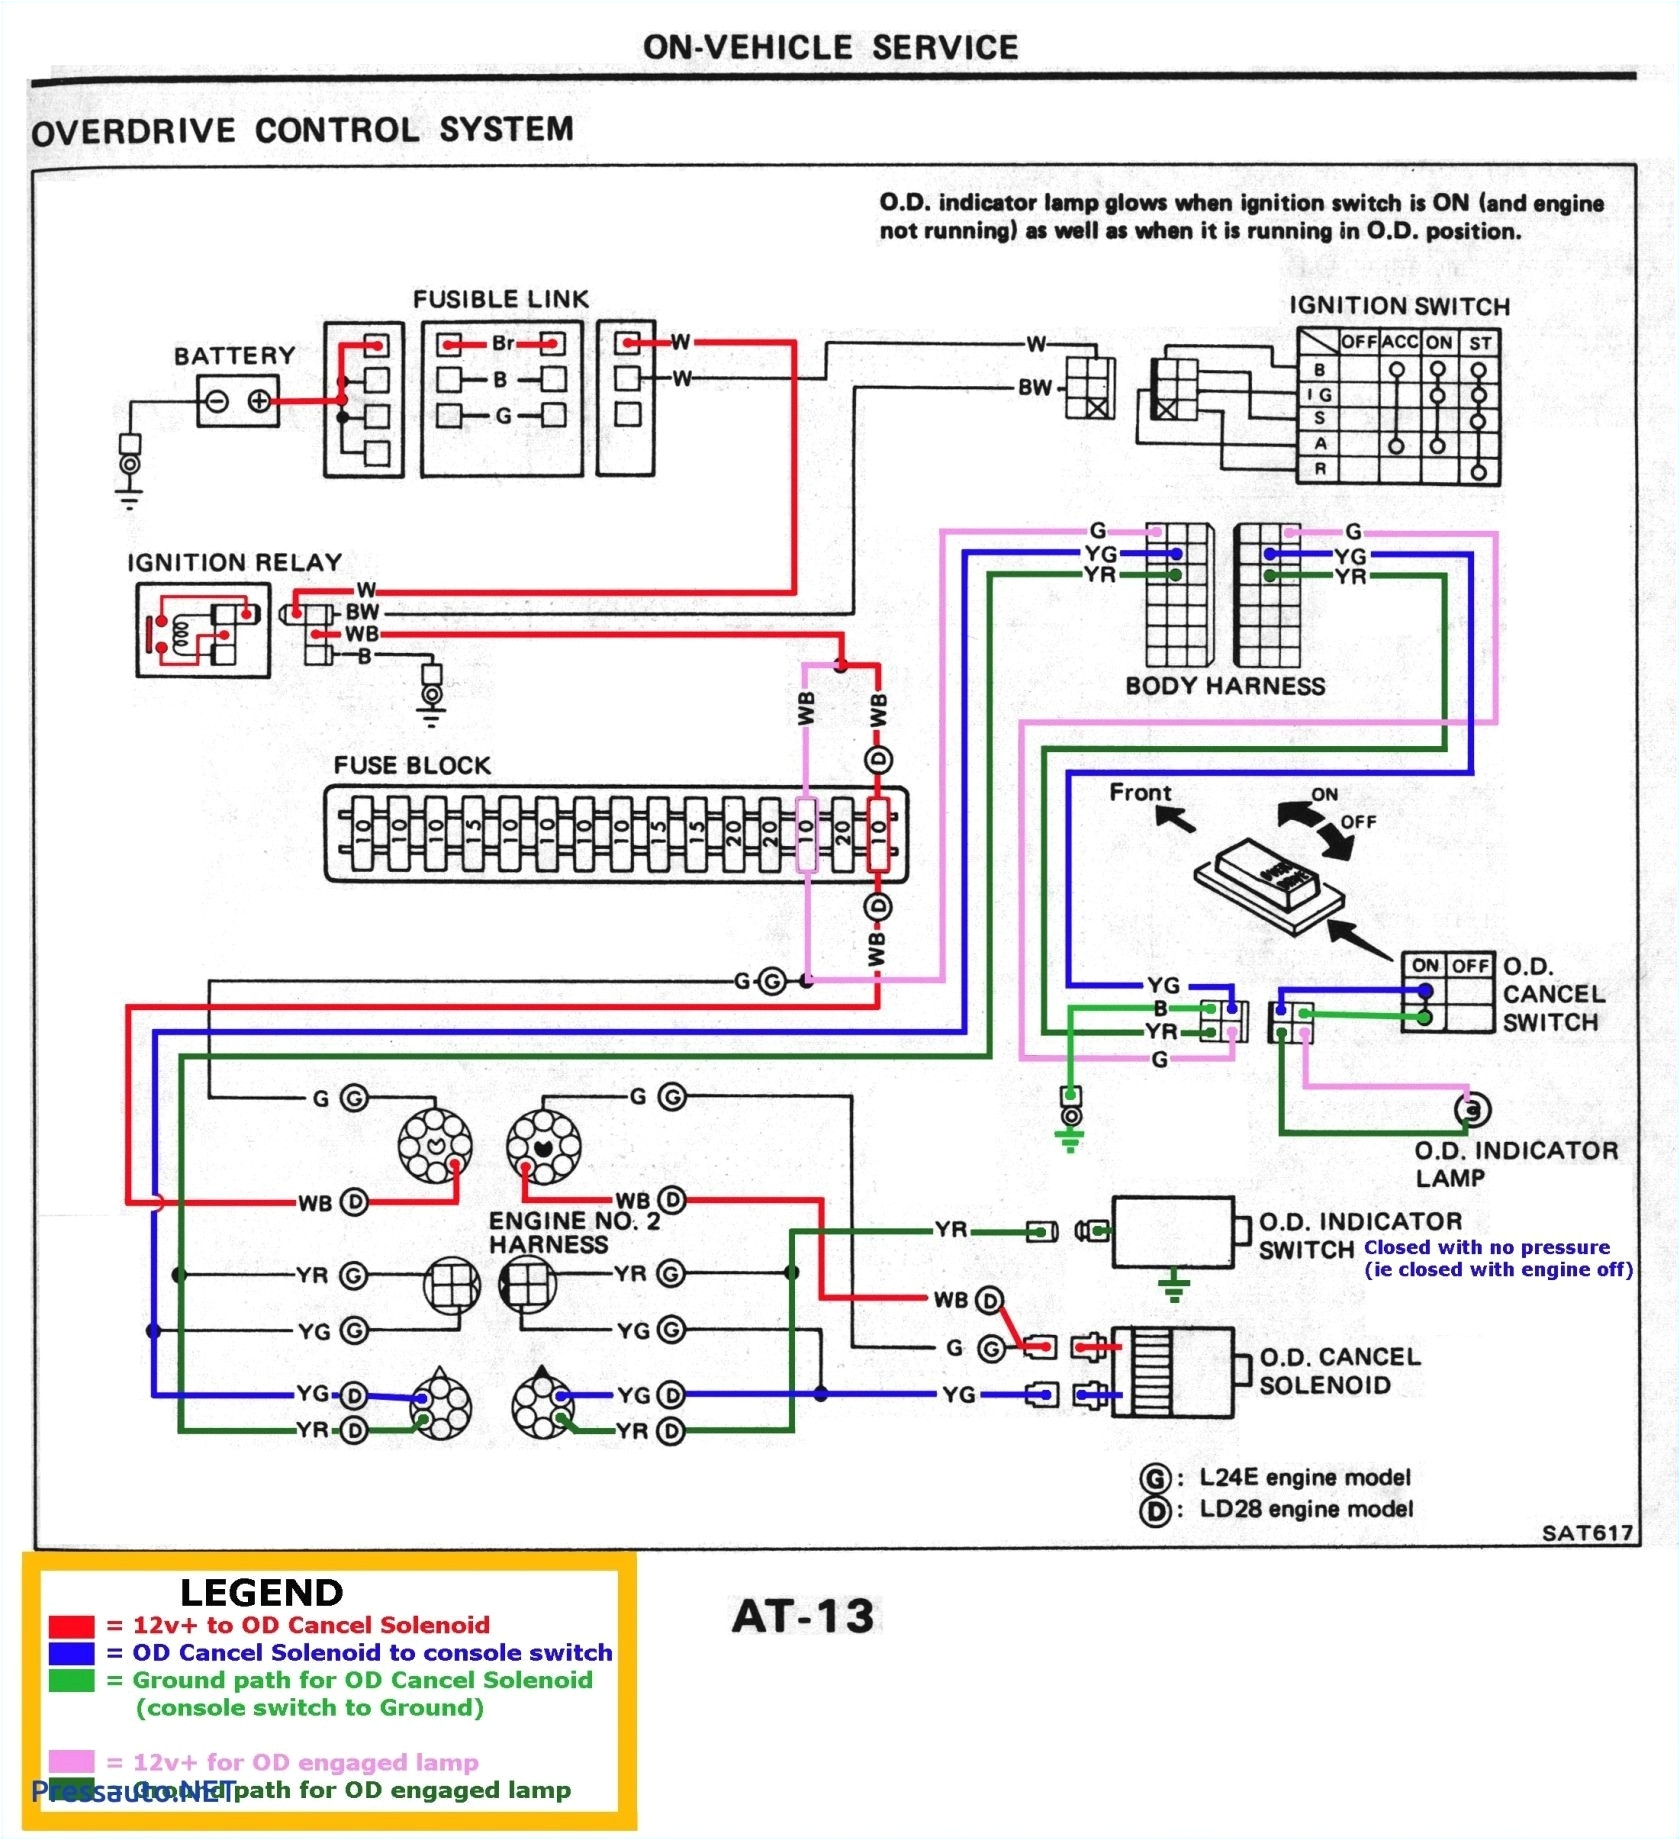 12 volt winch wiring diagram ac winch wiring diagram refrence wiring diagram for warn winch fresh wiring diagram warn a2000 wiring 19b jpg